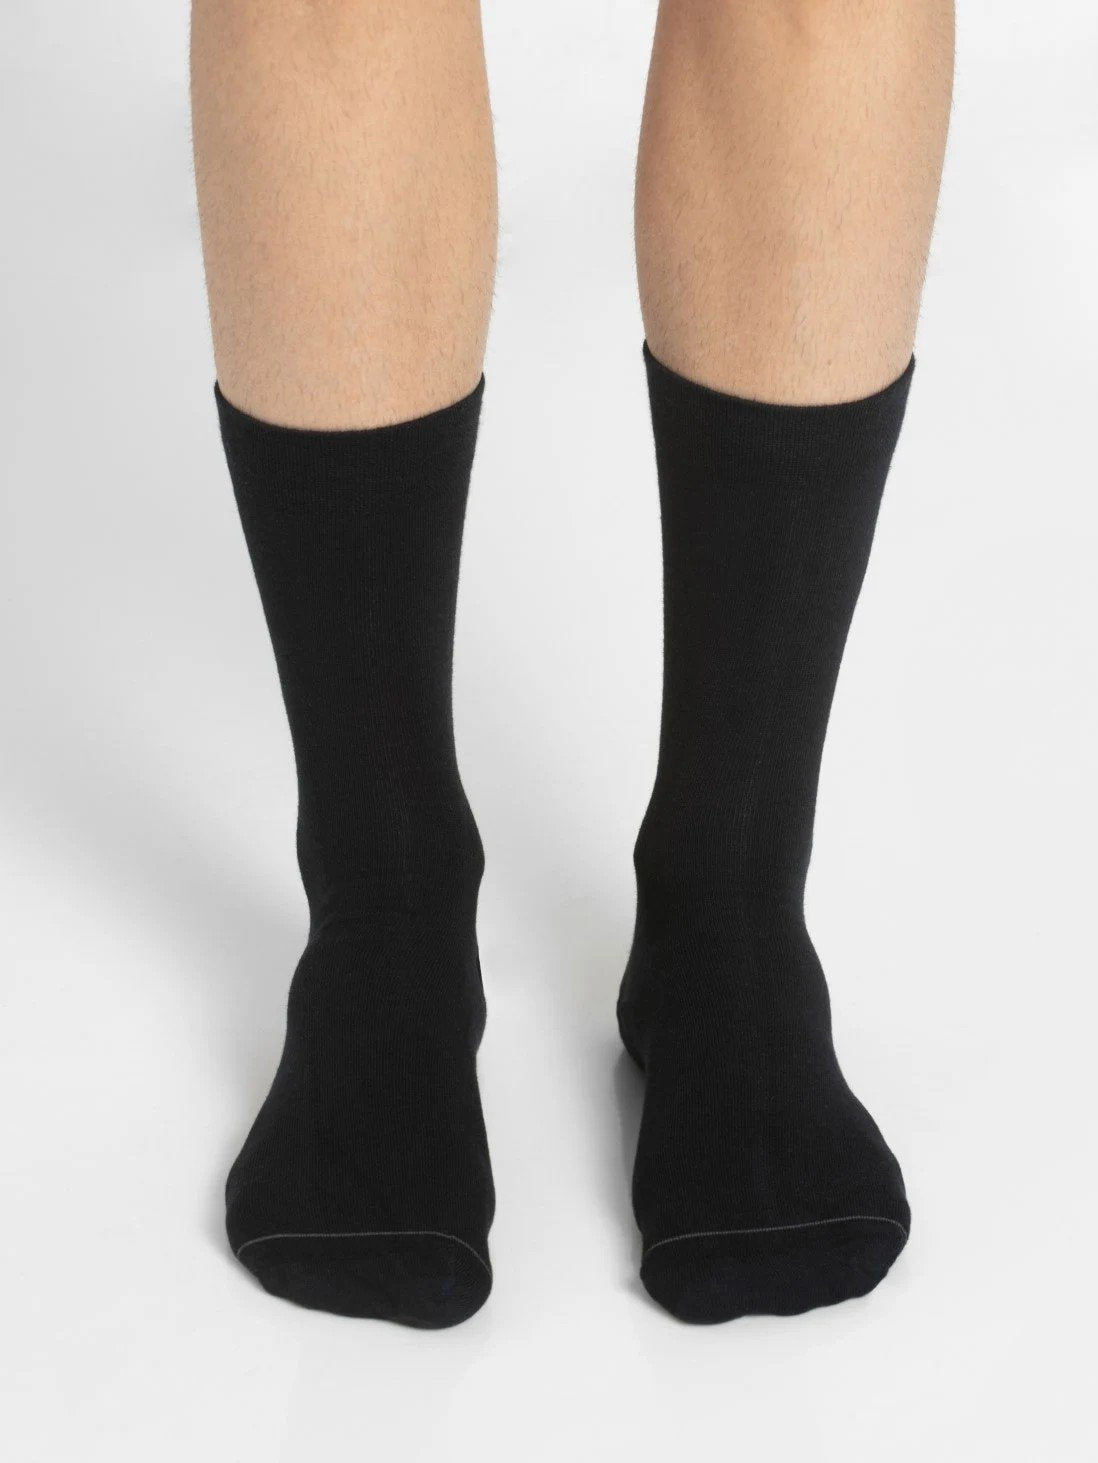 Men's Assorted Calf Length Socks